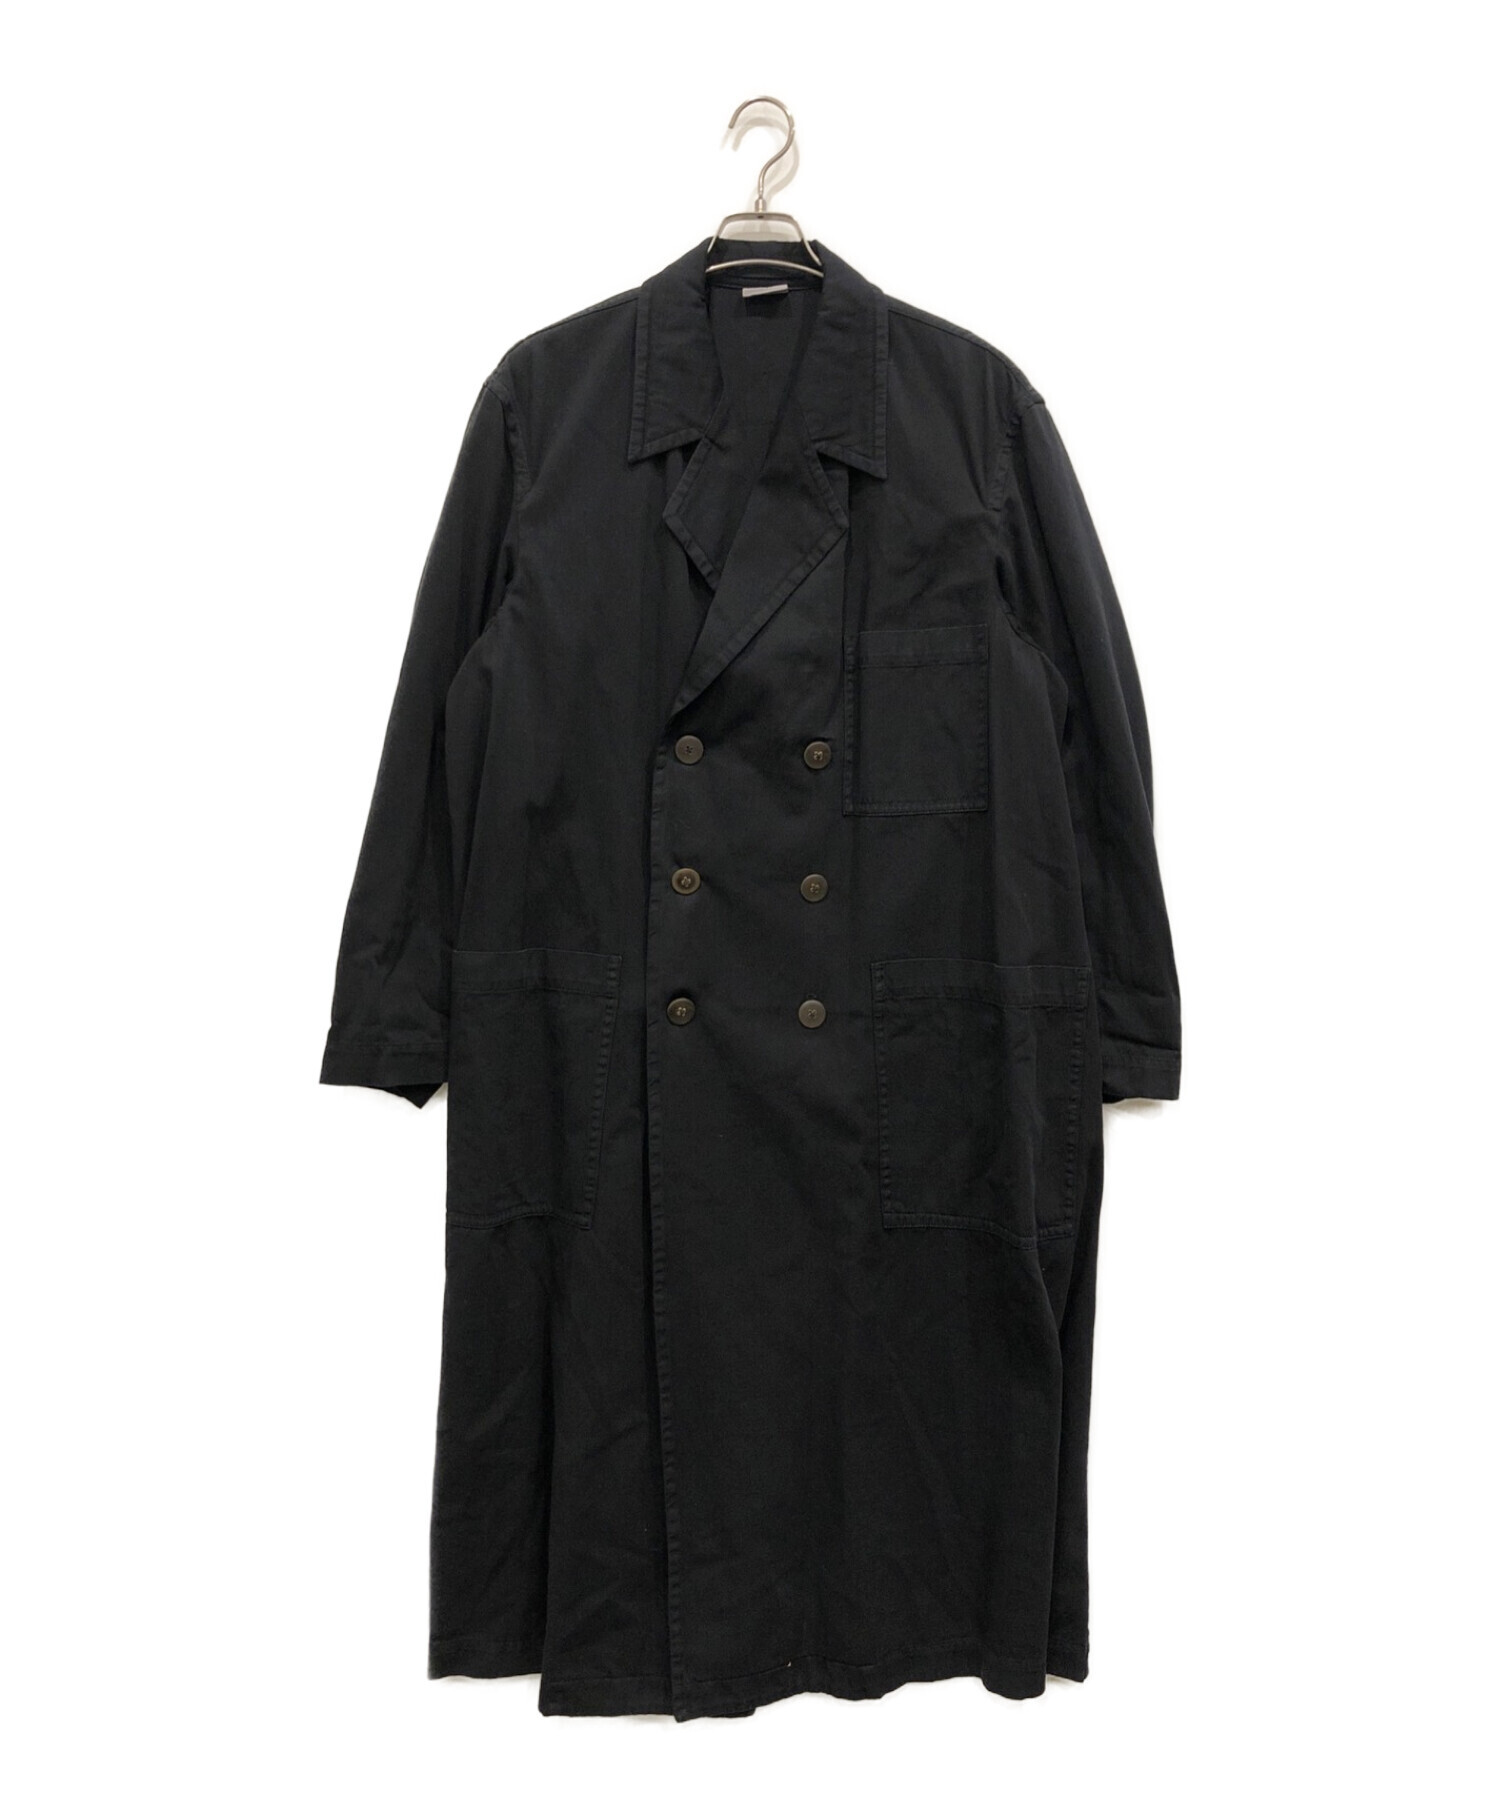 【売り切り価格】ドリスヴァンノッテン コート袖丈55cm